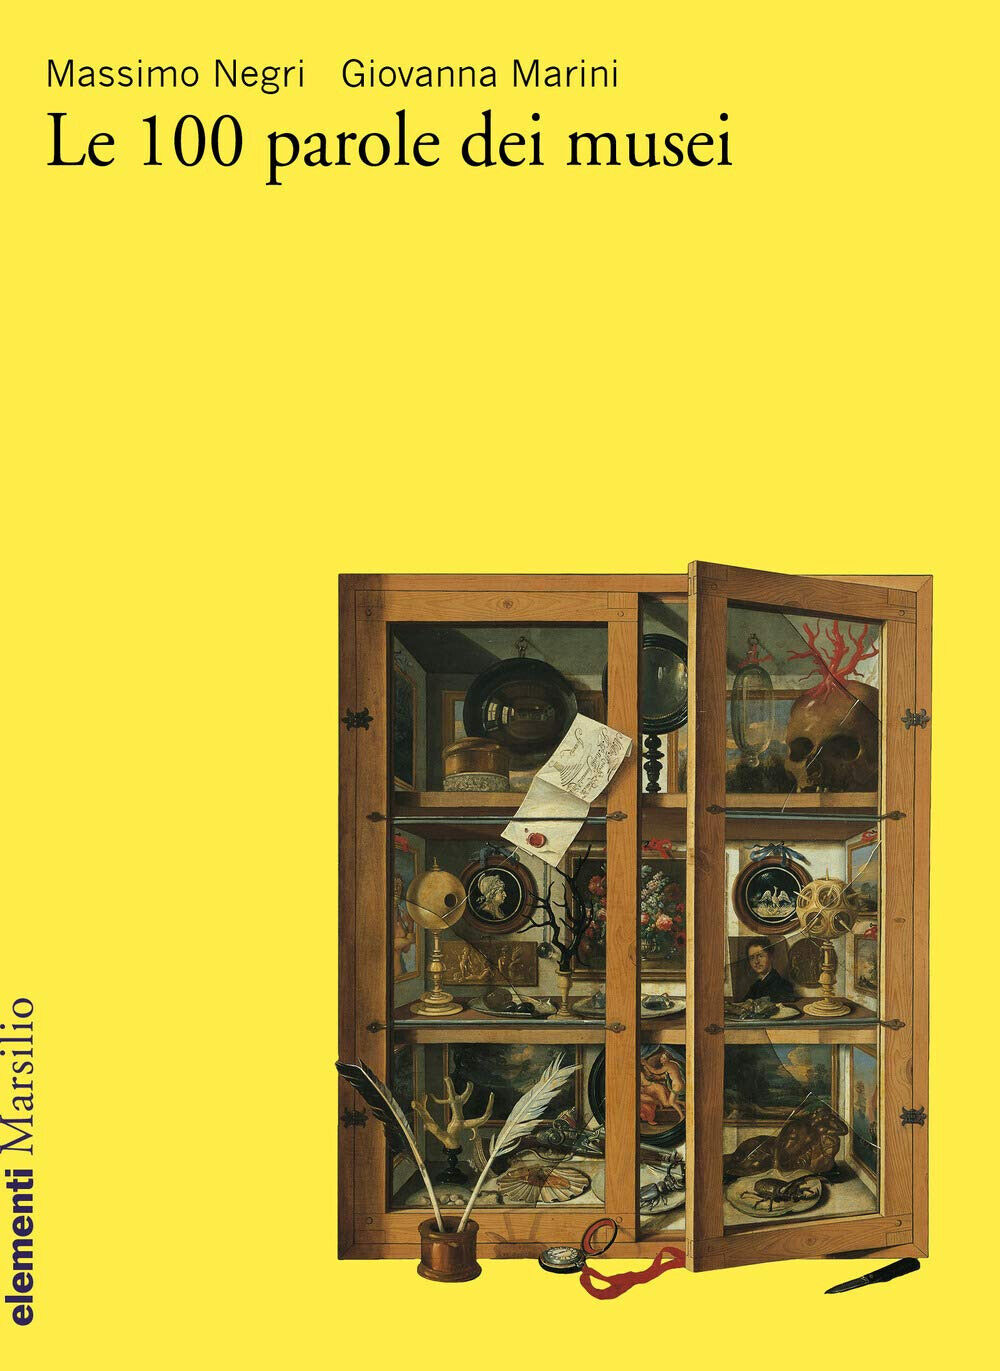 Le 100 parole dei musei di Massimo Negri, Giovanna Marini - Marsilio, 2020 libro usato